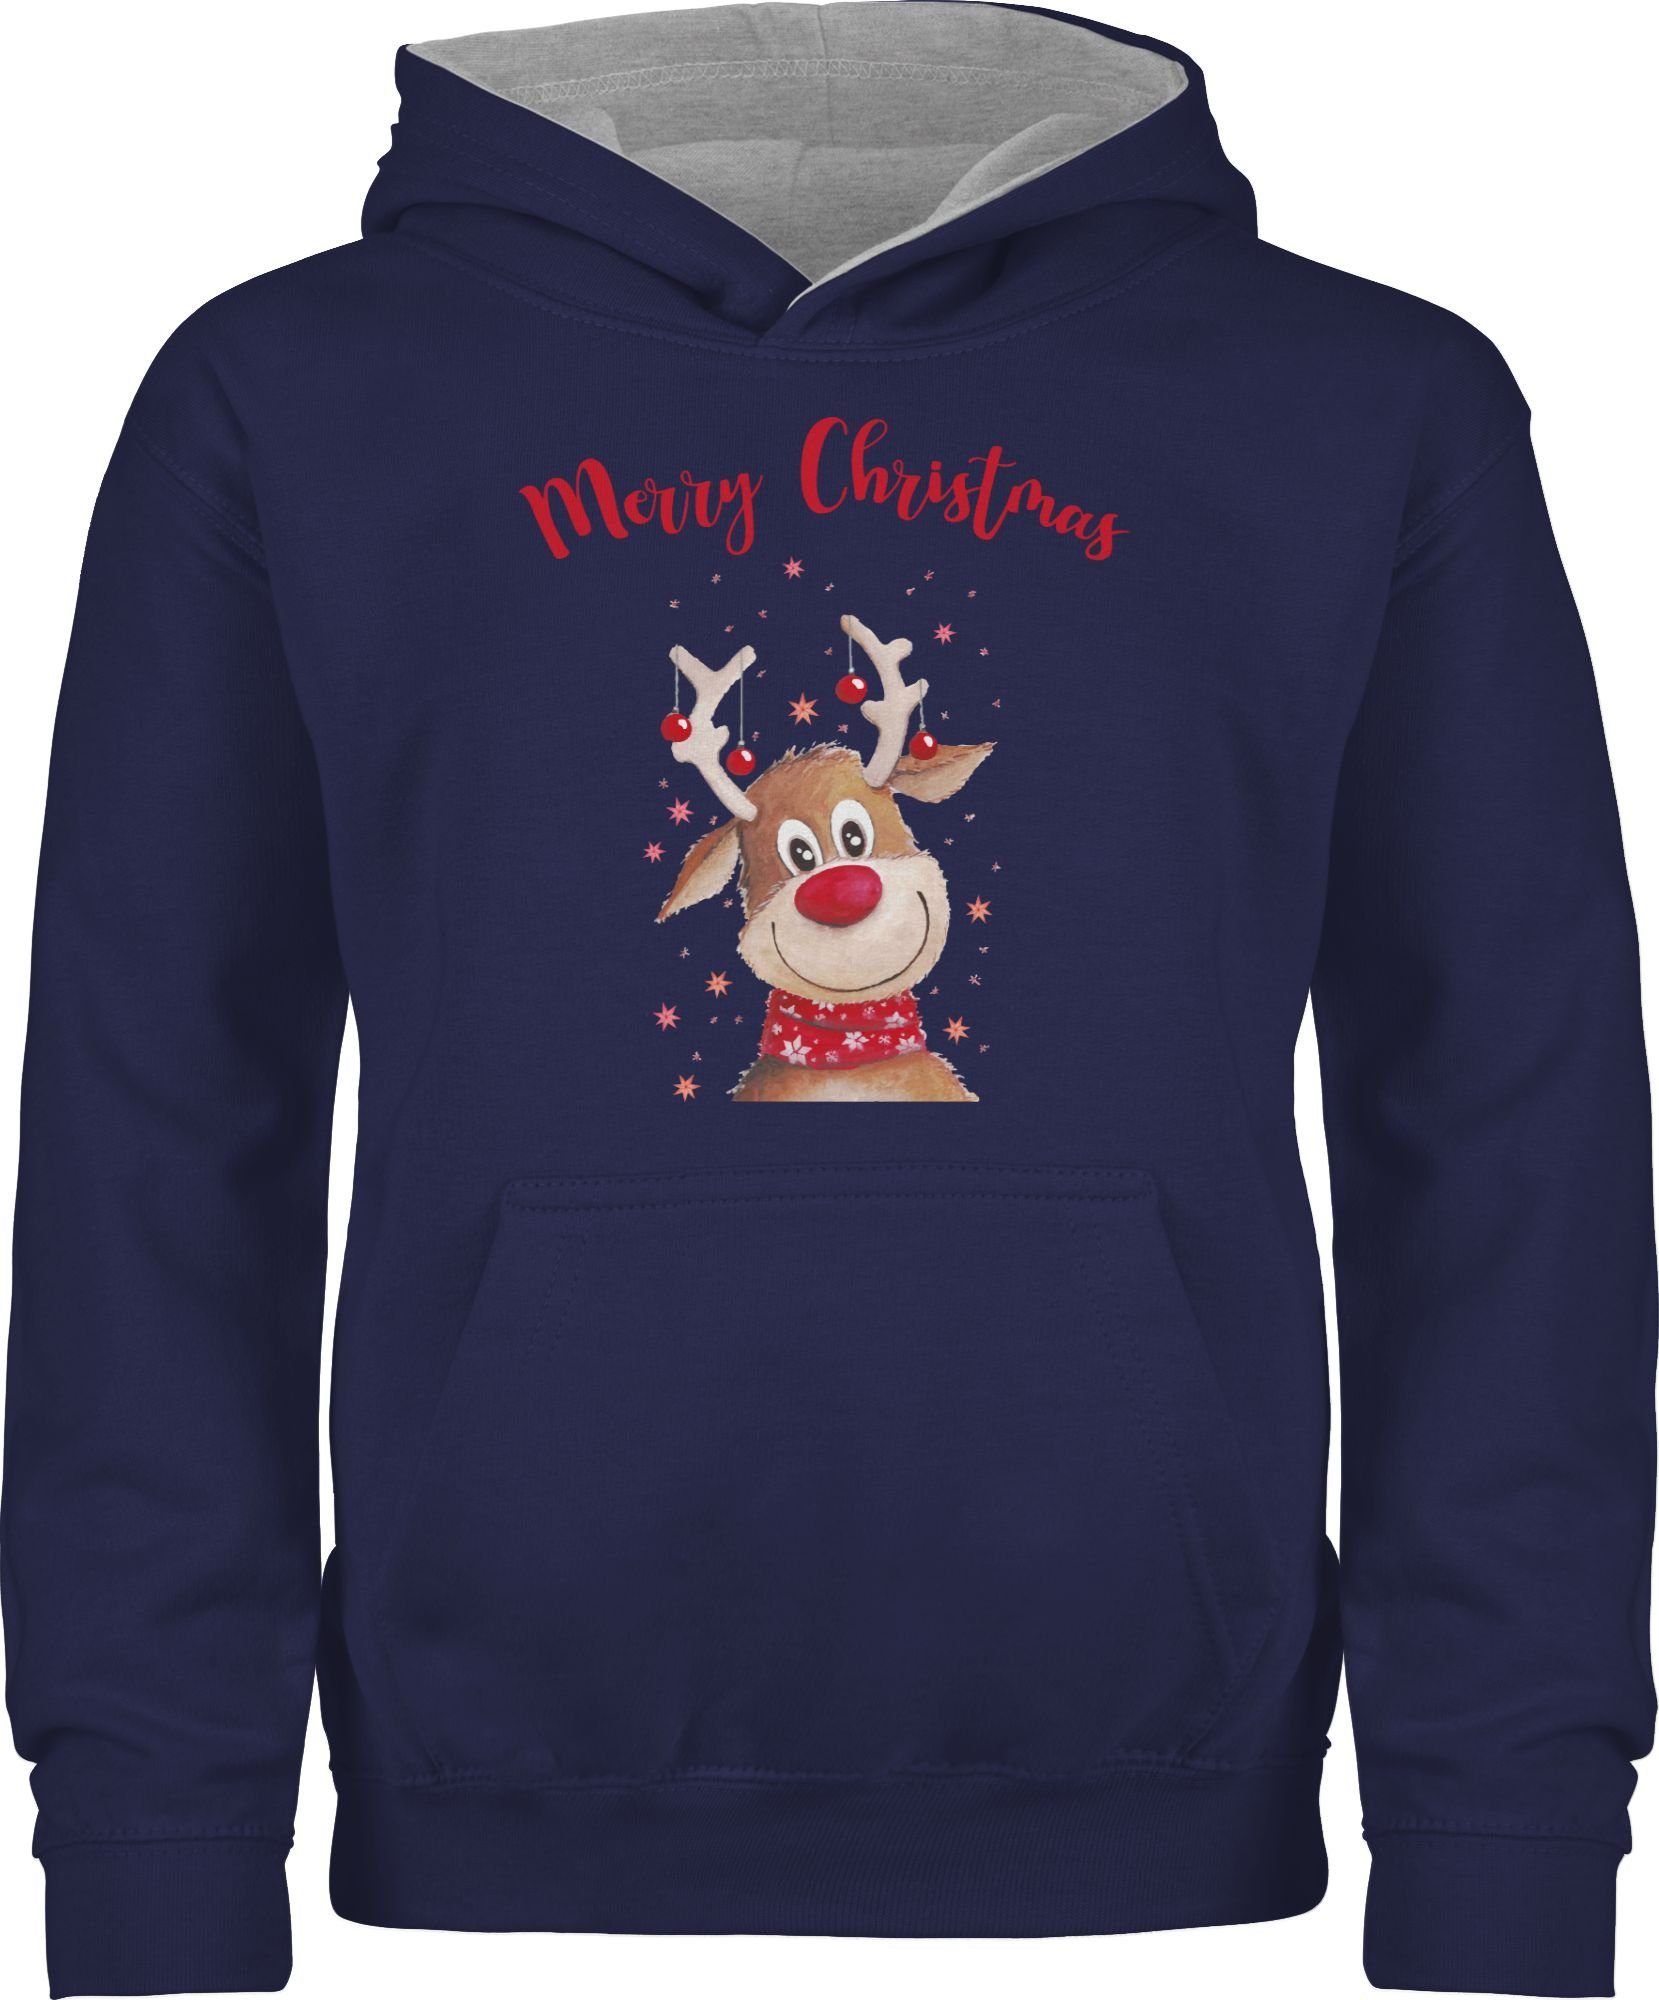 Shirtracer Hoodie Merry Christmas Rentier Weihnachten Kleidung Kinder 2 Navy Blau/Grau meliert